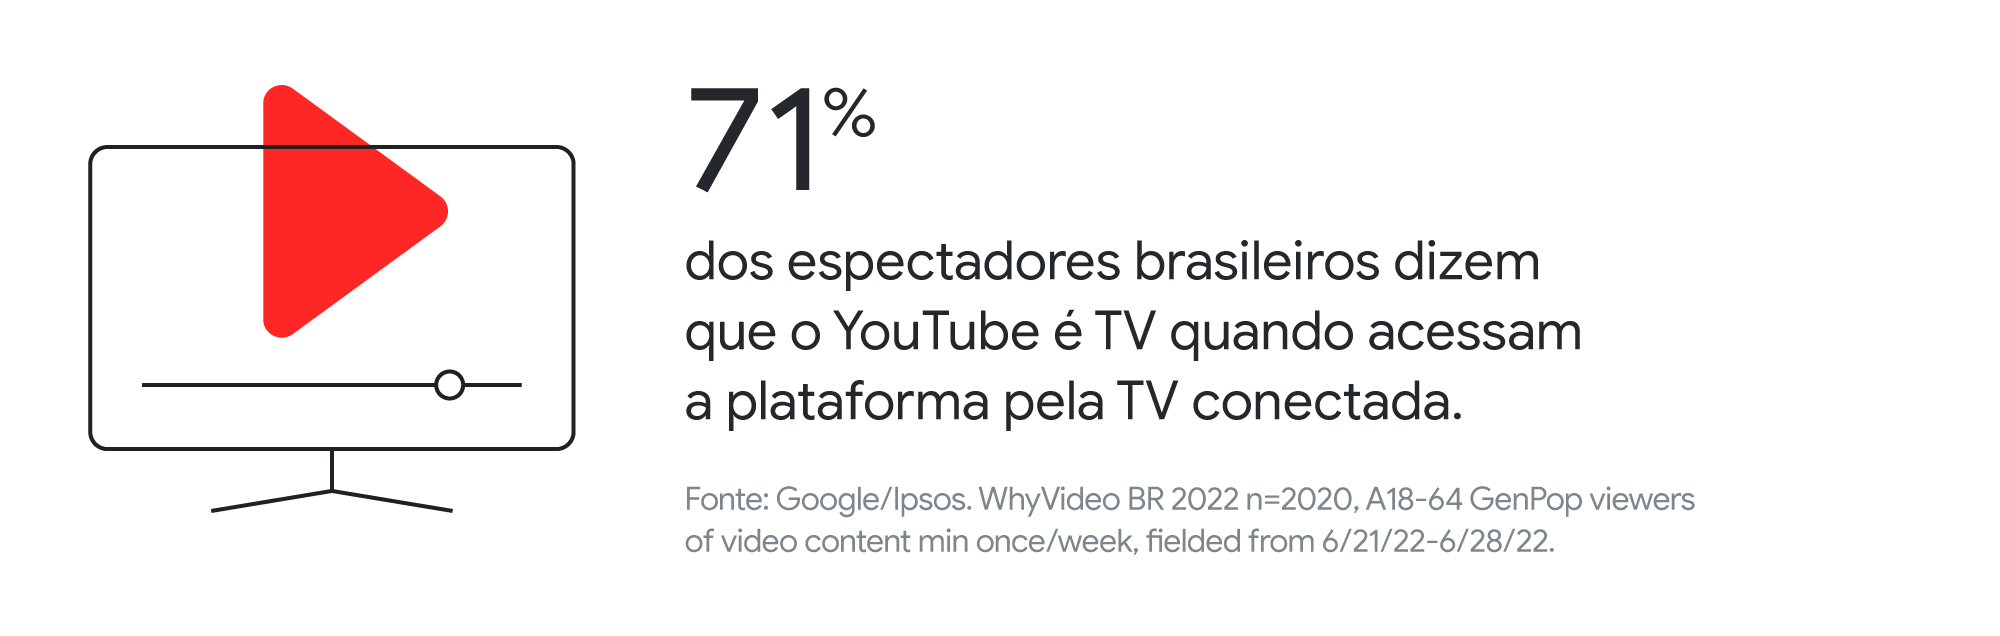 71% dos espectadores brasileiros dizem que o YouTube é TV quando acessam a plataforma pela TV conectada.